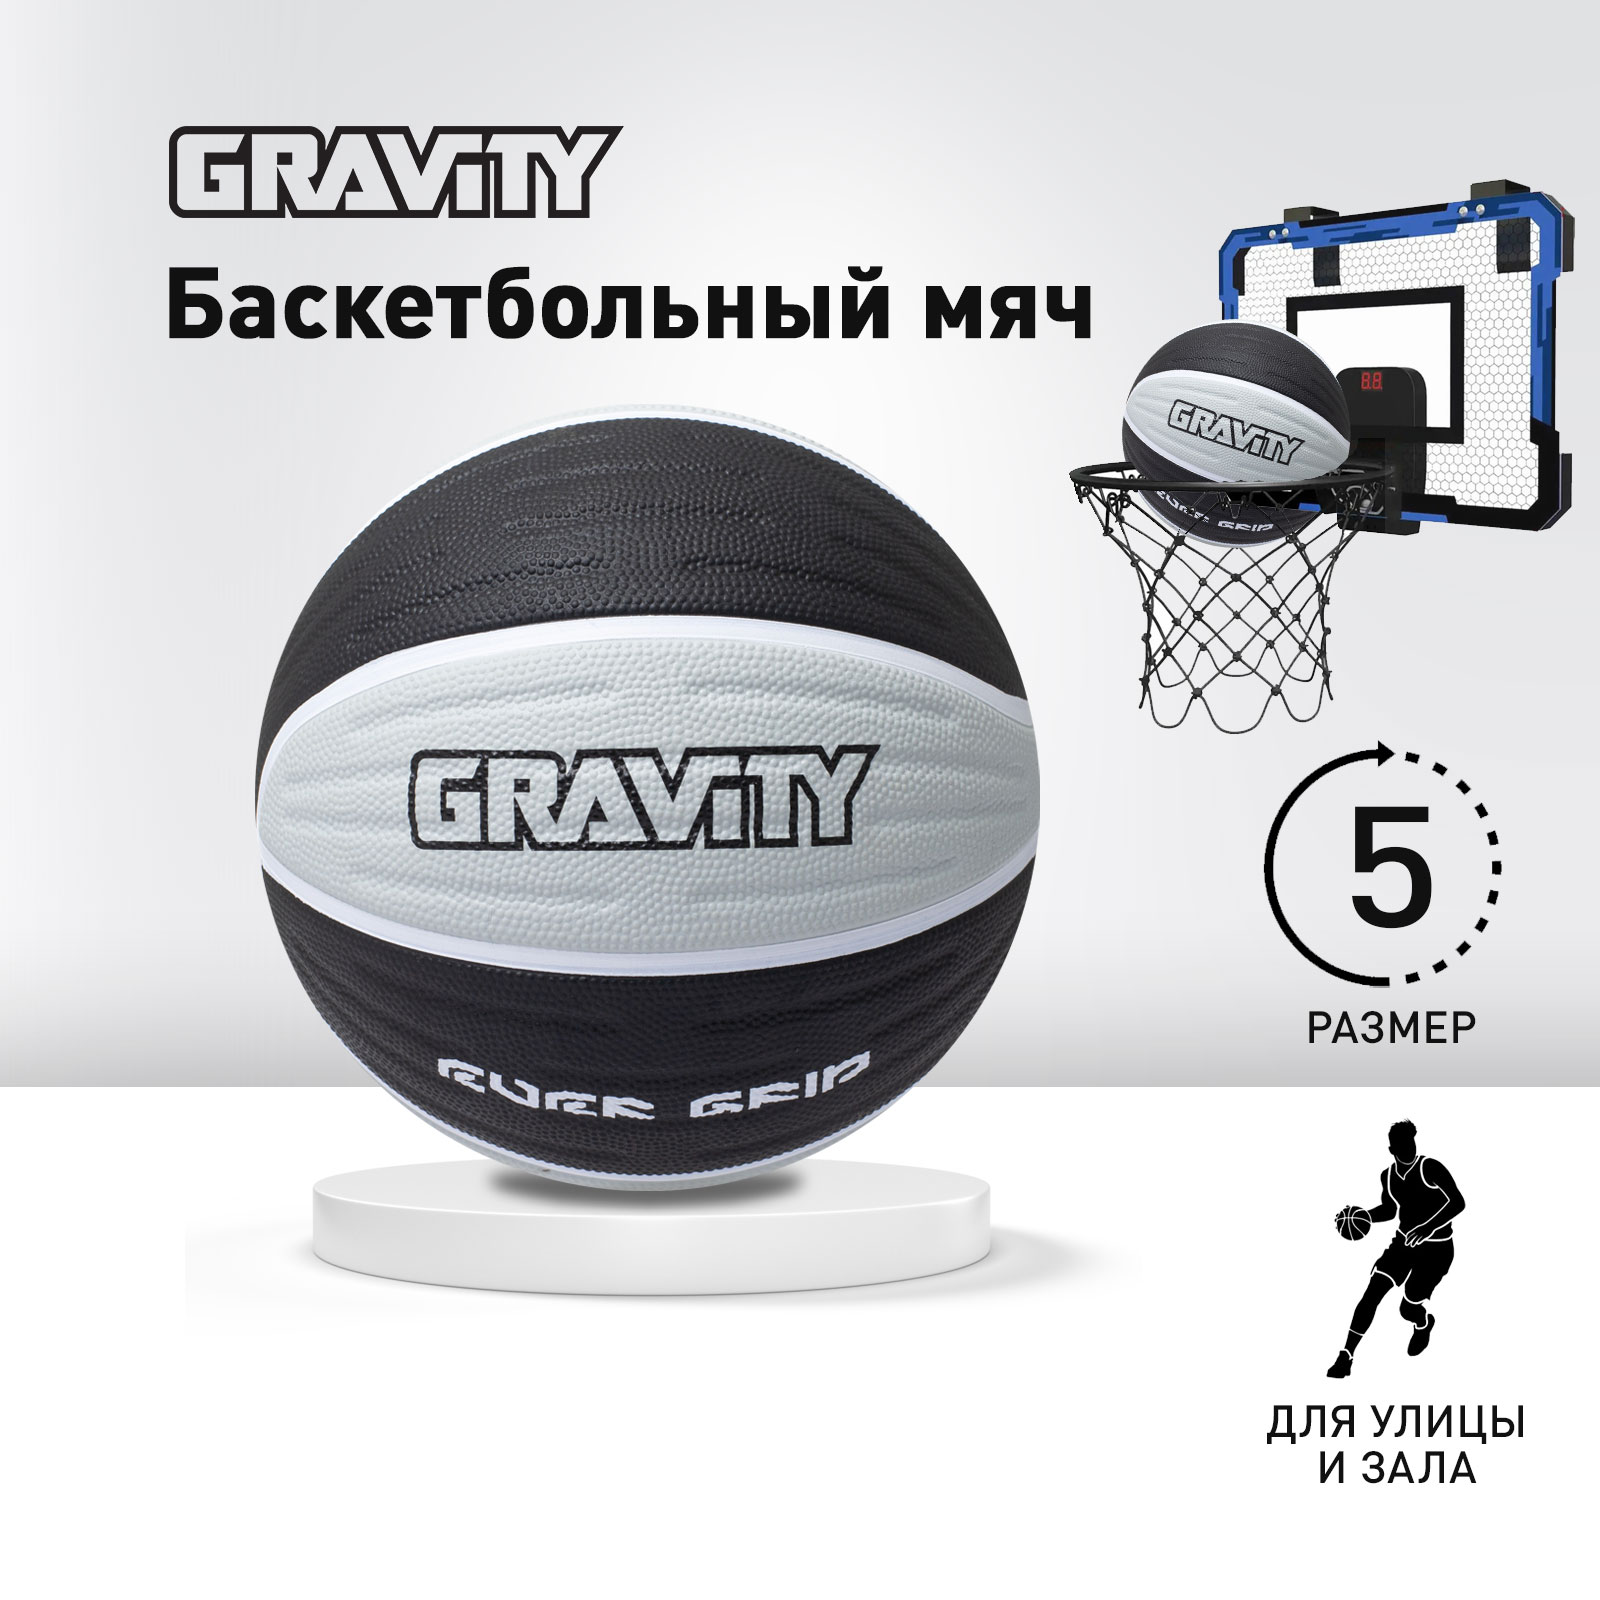 Баскетбольный мяч Gravity, вспененная резина, черно-серый, размер 5